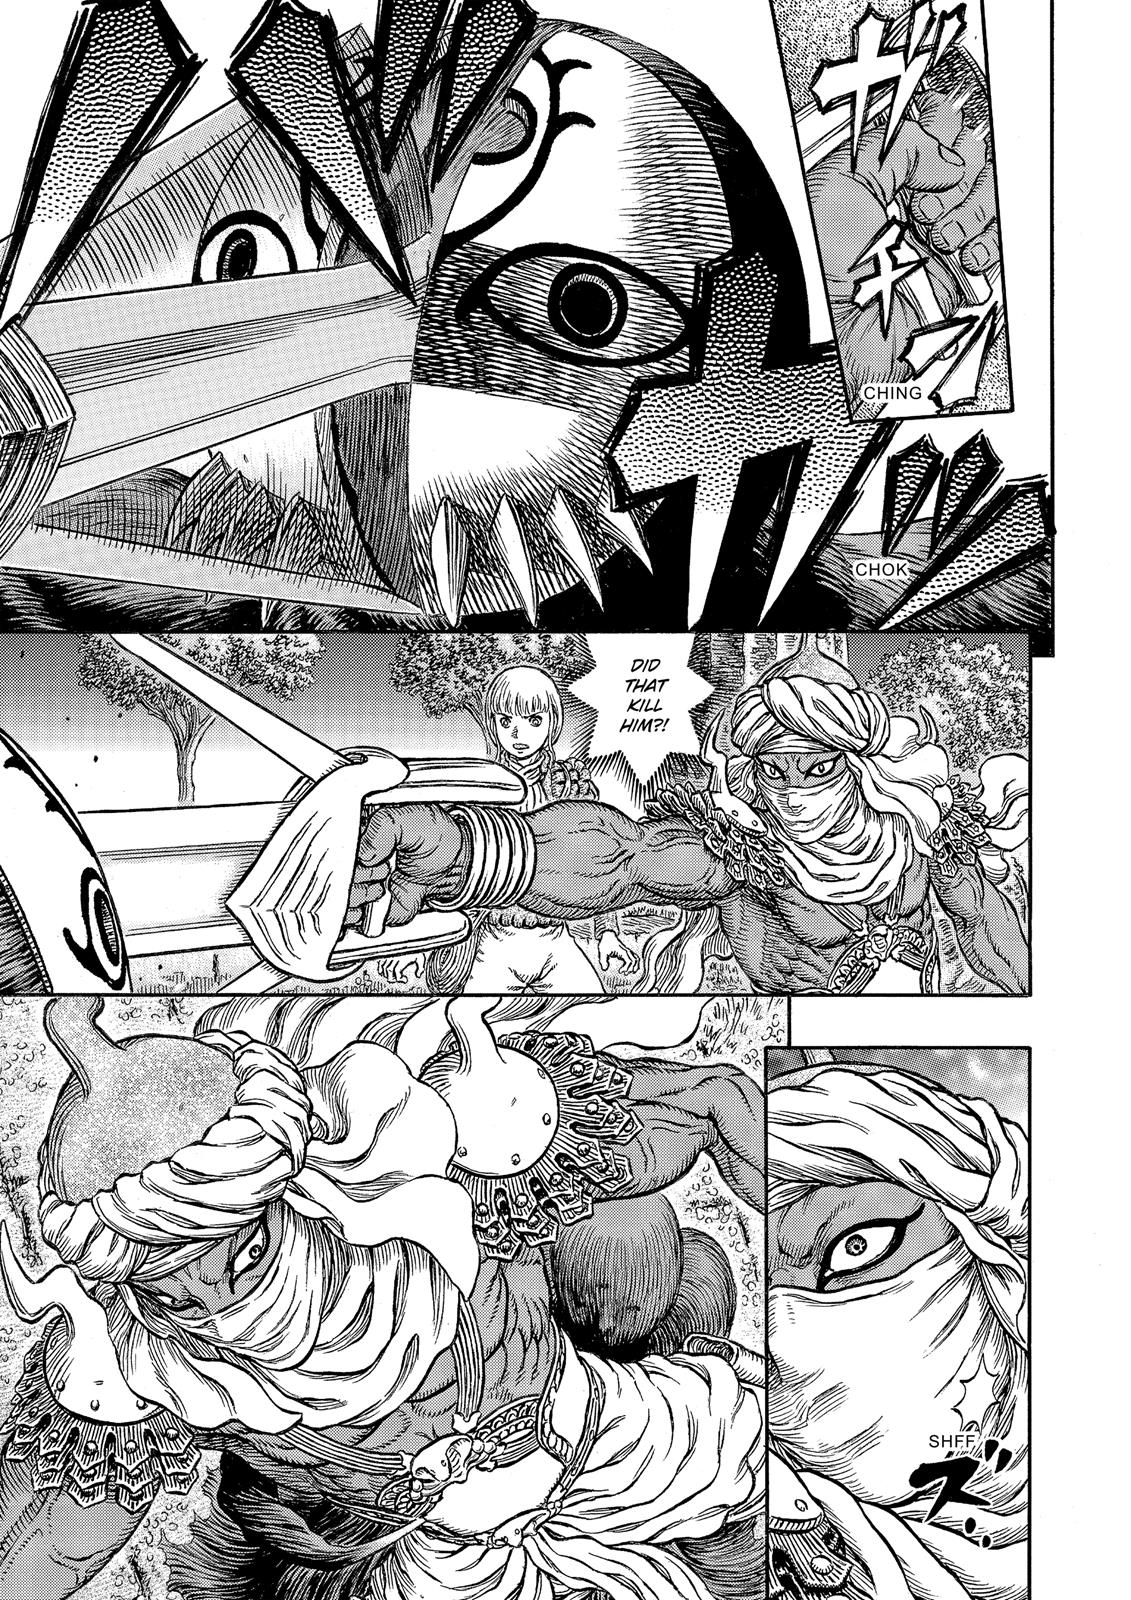 Berserk Manga Chapter 339 image 08